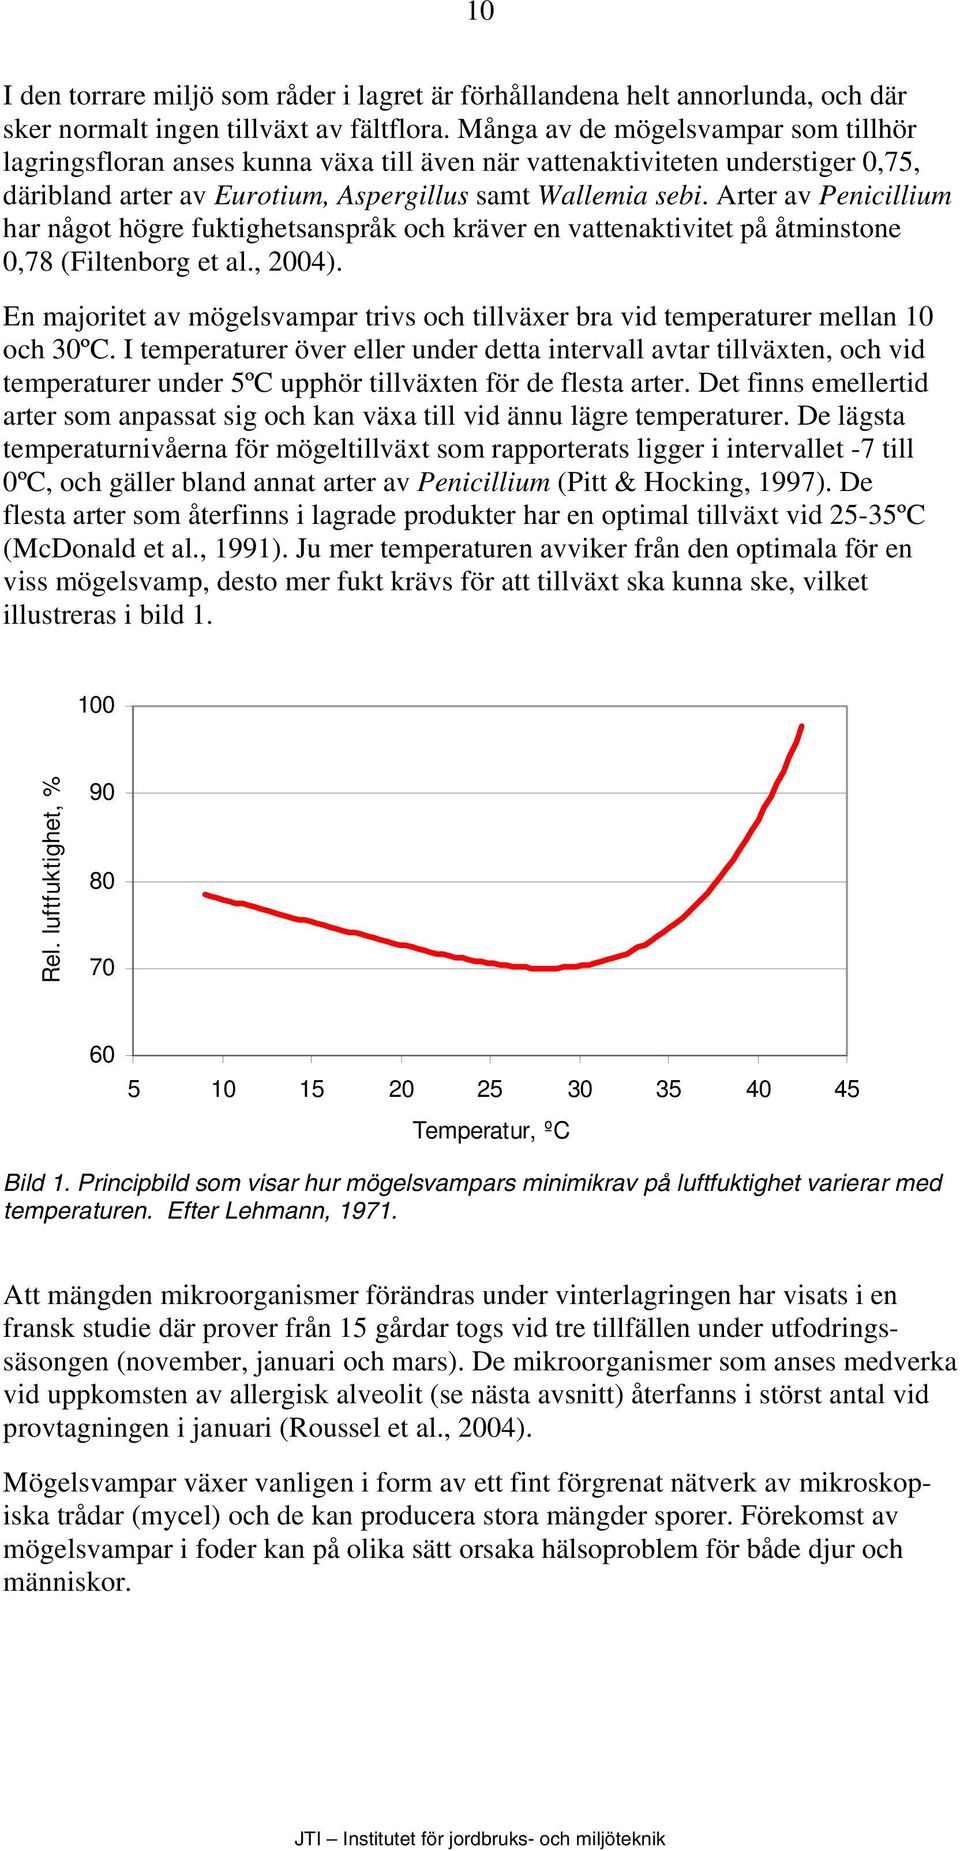 Arter av Penicillium har något högre fuktighetsanspråk och kräver en vattenaktivitet på åtminstone 0,78 (Filtenborg et al., 2004).